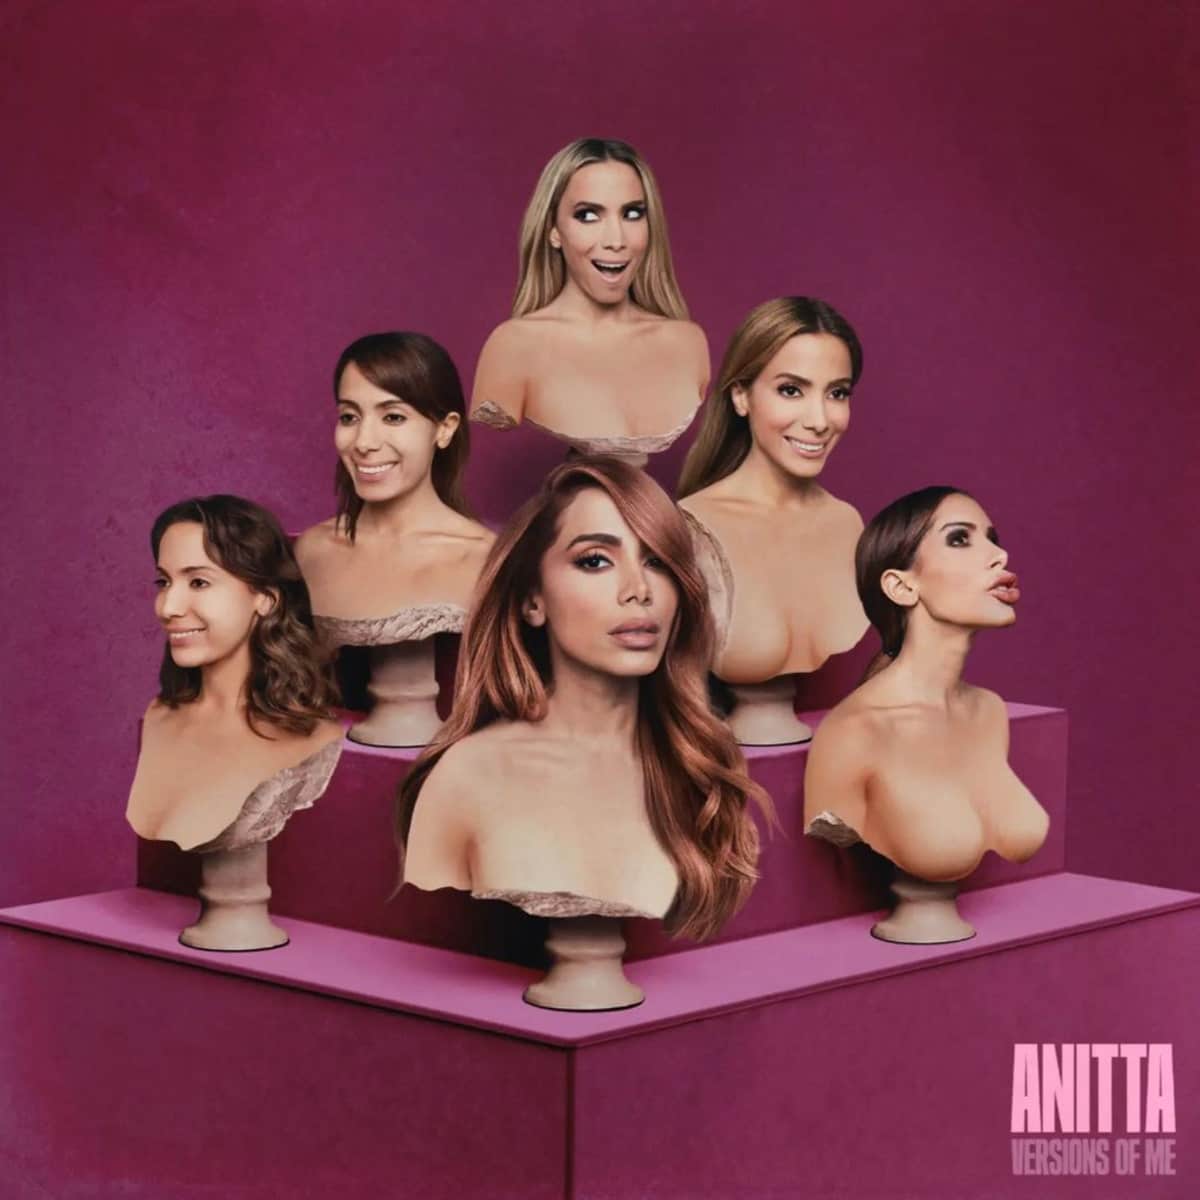 Anitta announces new album ‘Versions of Me’